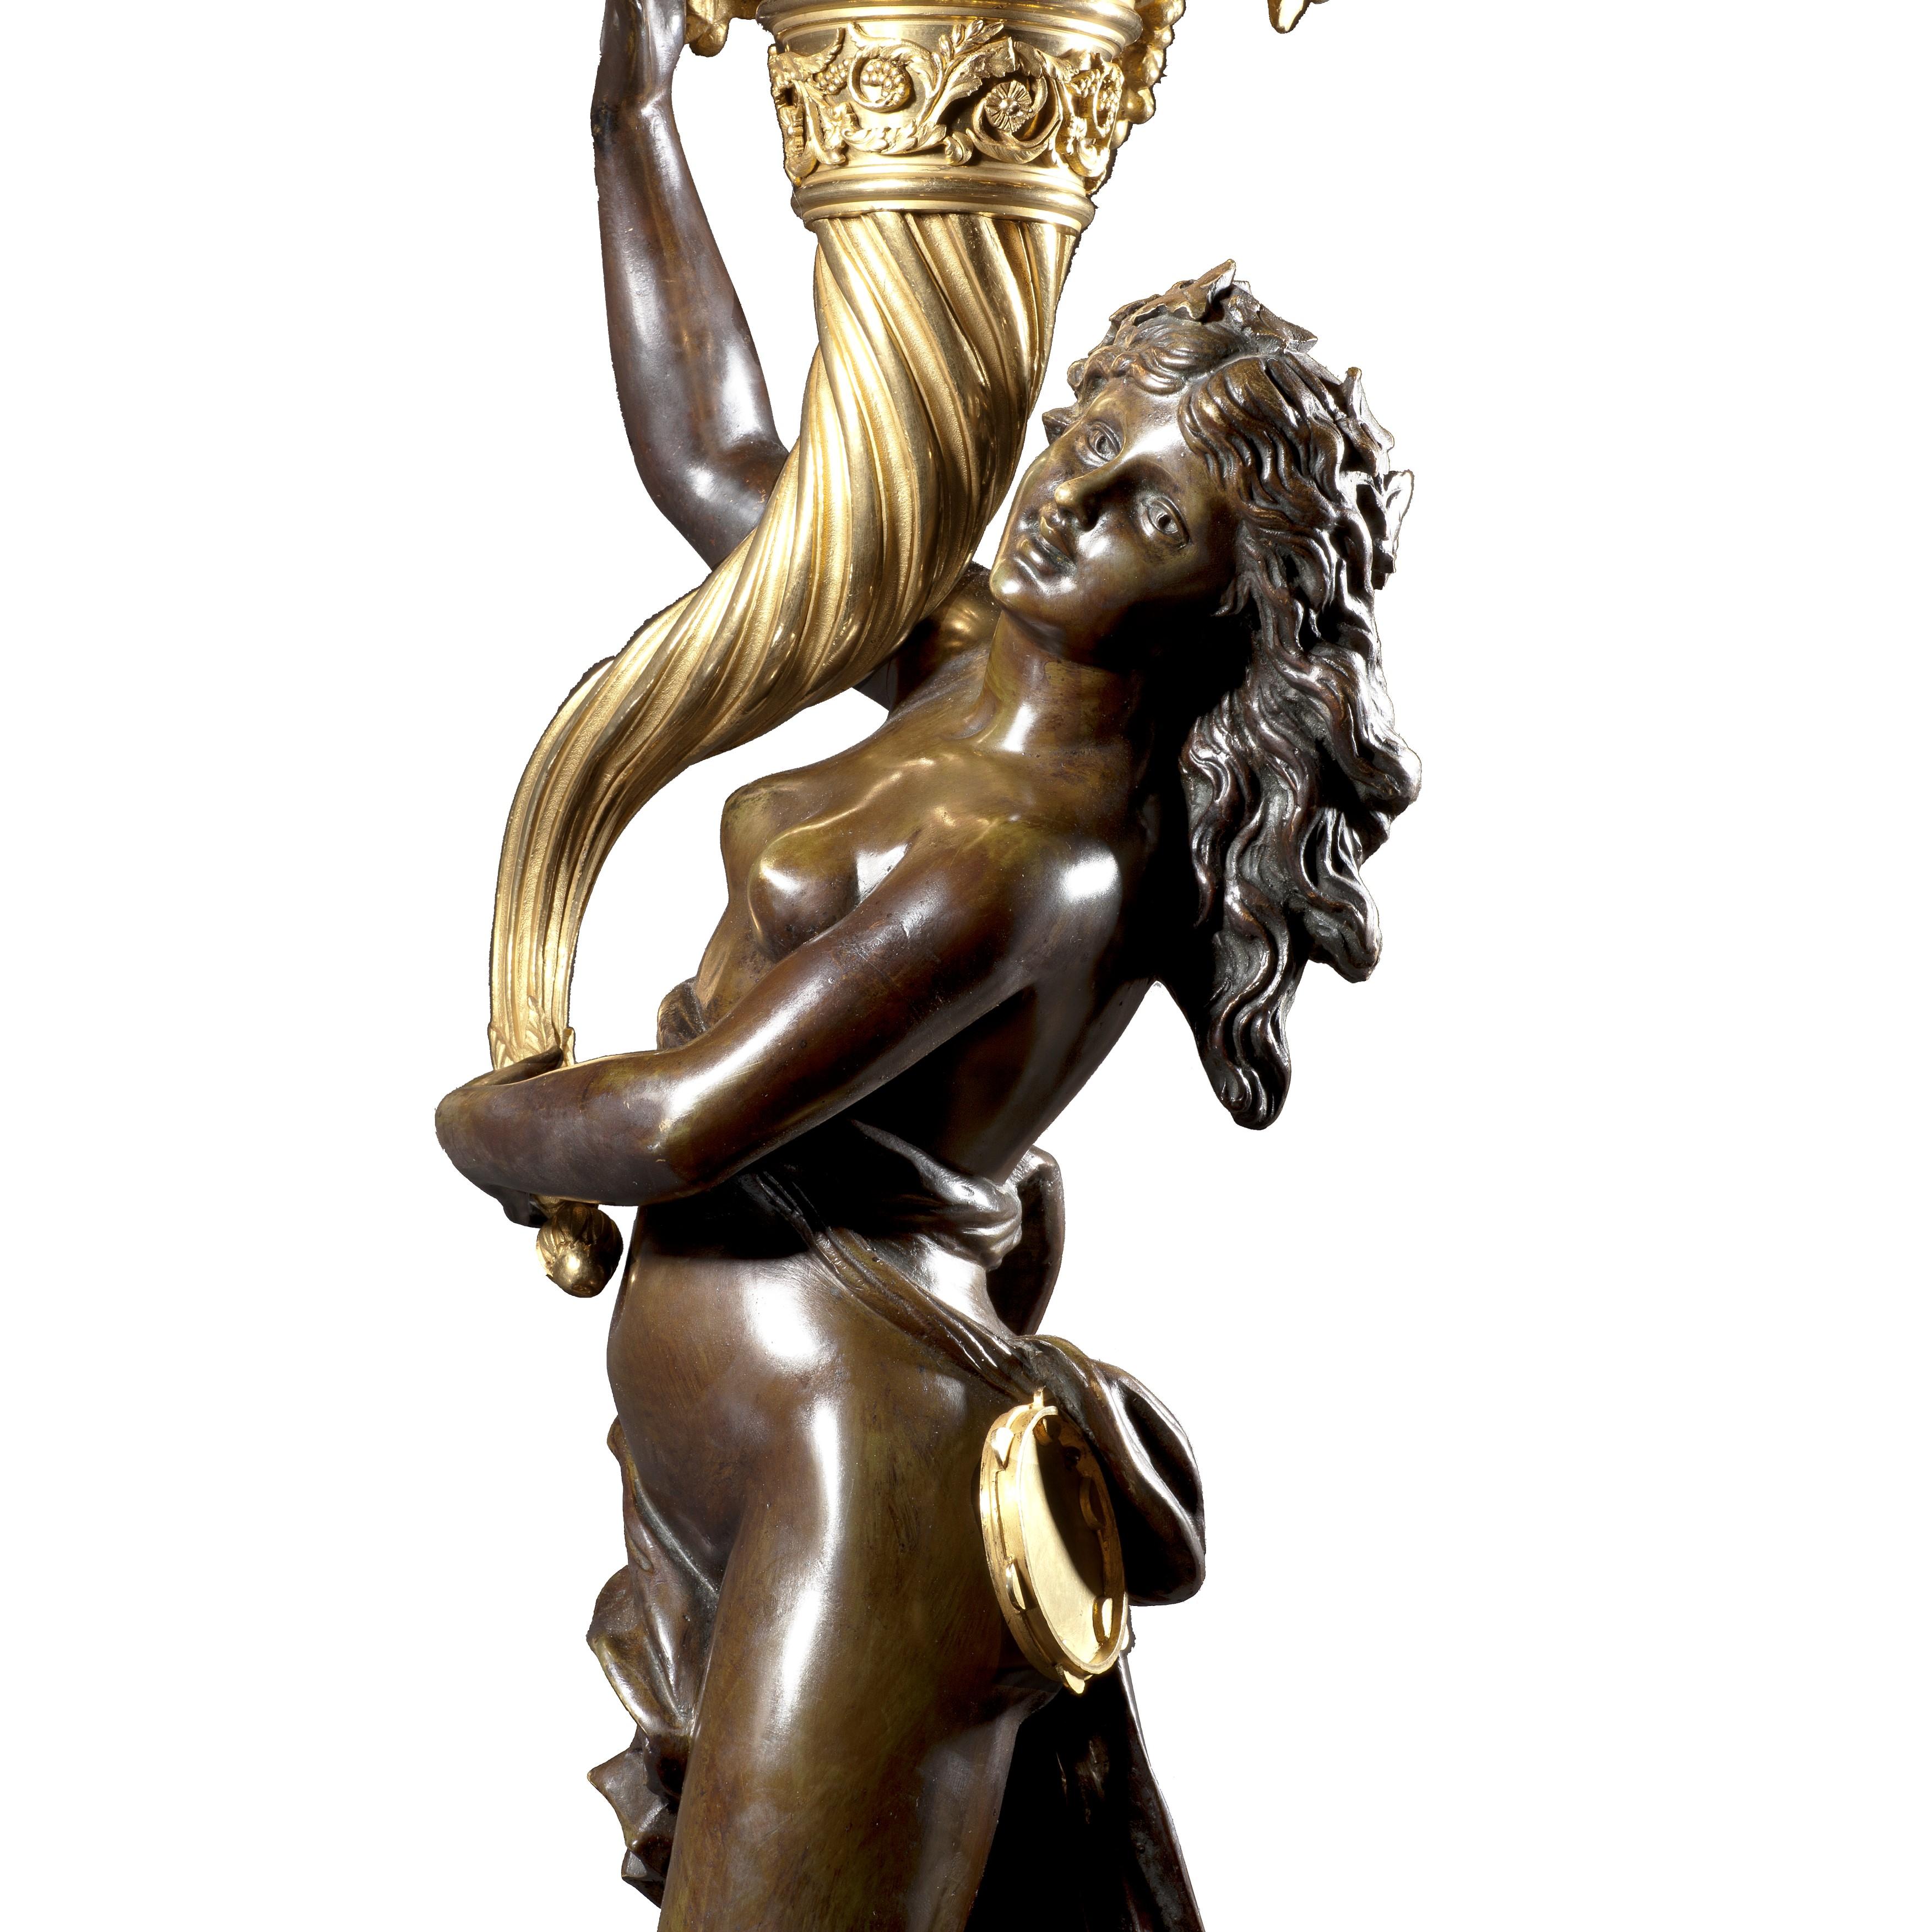 Une magnifique paire de candélabres Louis XVI après clodion

Ces impressionnants candélabres à huit lumières en bronze doré et patiné reposent sur des piédestaux en marbre griotte rouge montés en bronze doré. Chacune est modelée avec une figure